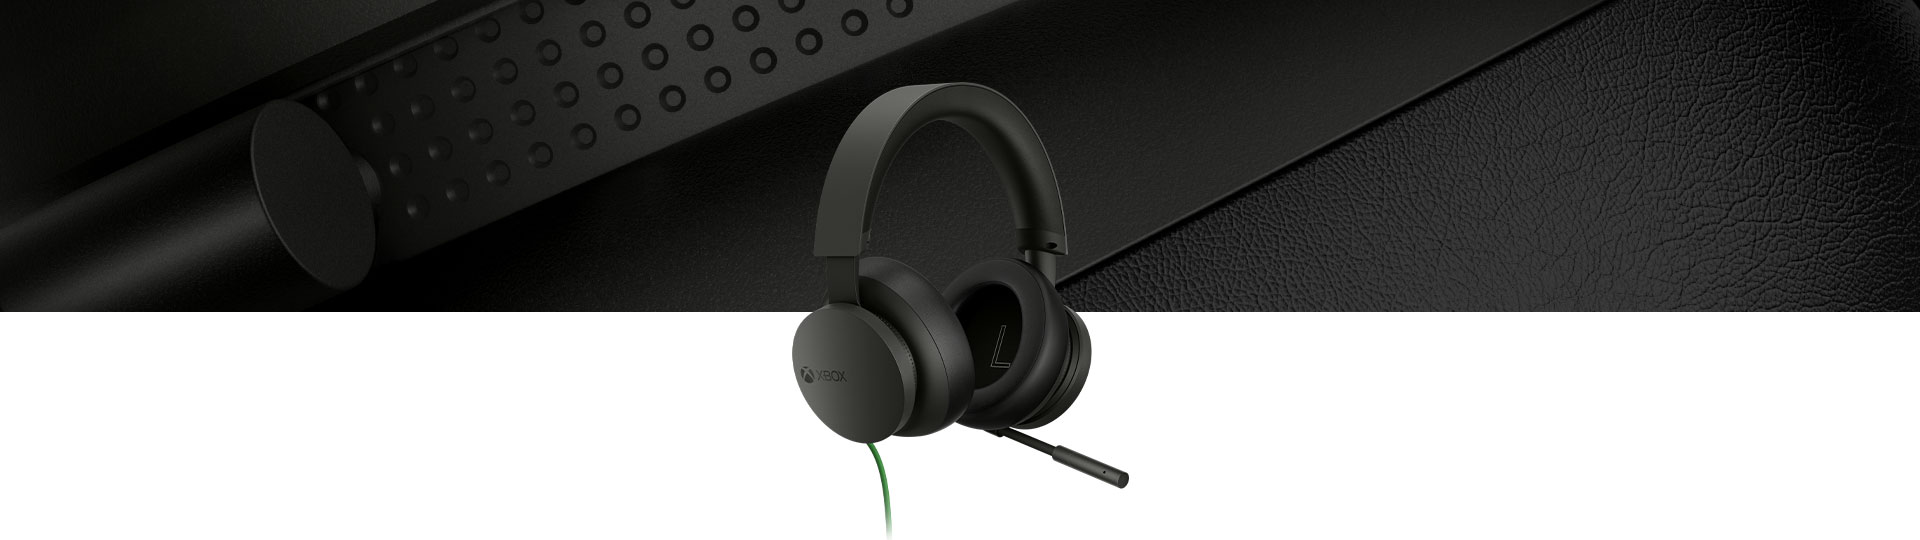 Audífonos estéreo de Xbox con un primer plano de los audífonos en el fondo